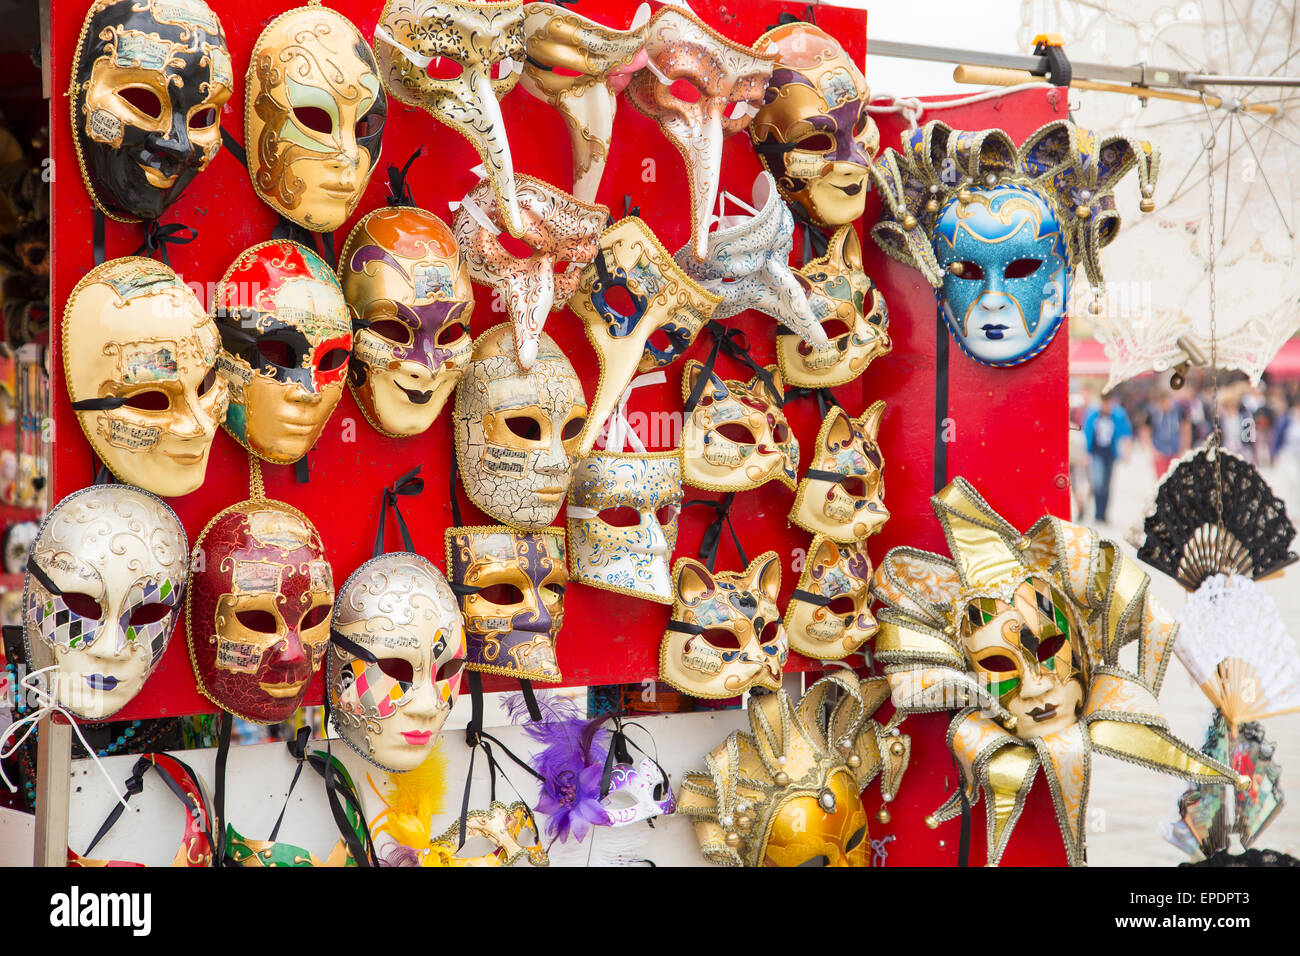 Groupe des fameux masques carnaval vénitien Vintage traditionnel libre dans une boutique à la rue à Venise, Italie Banque D'Images